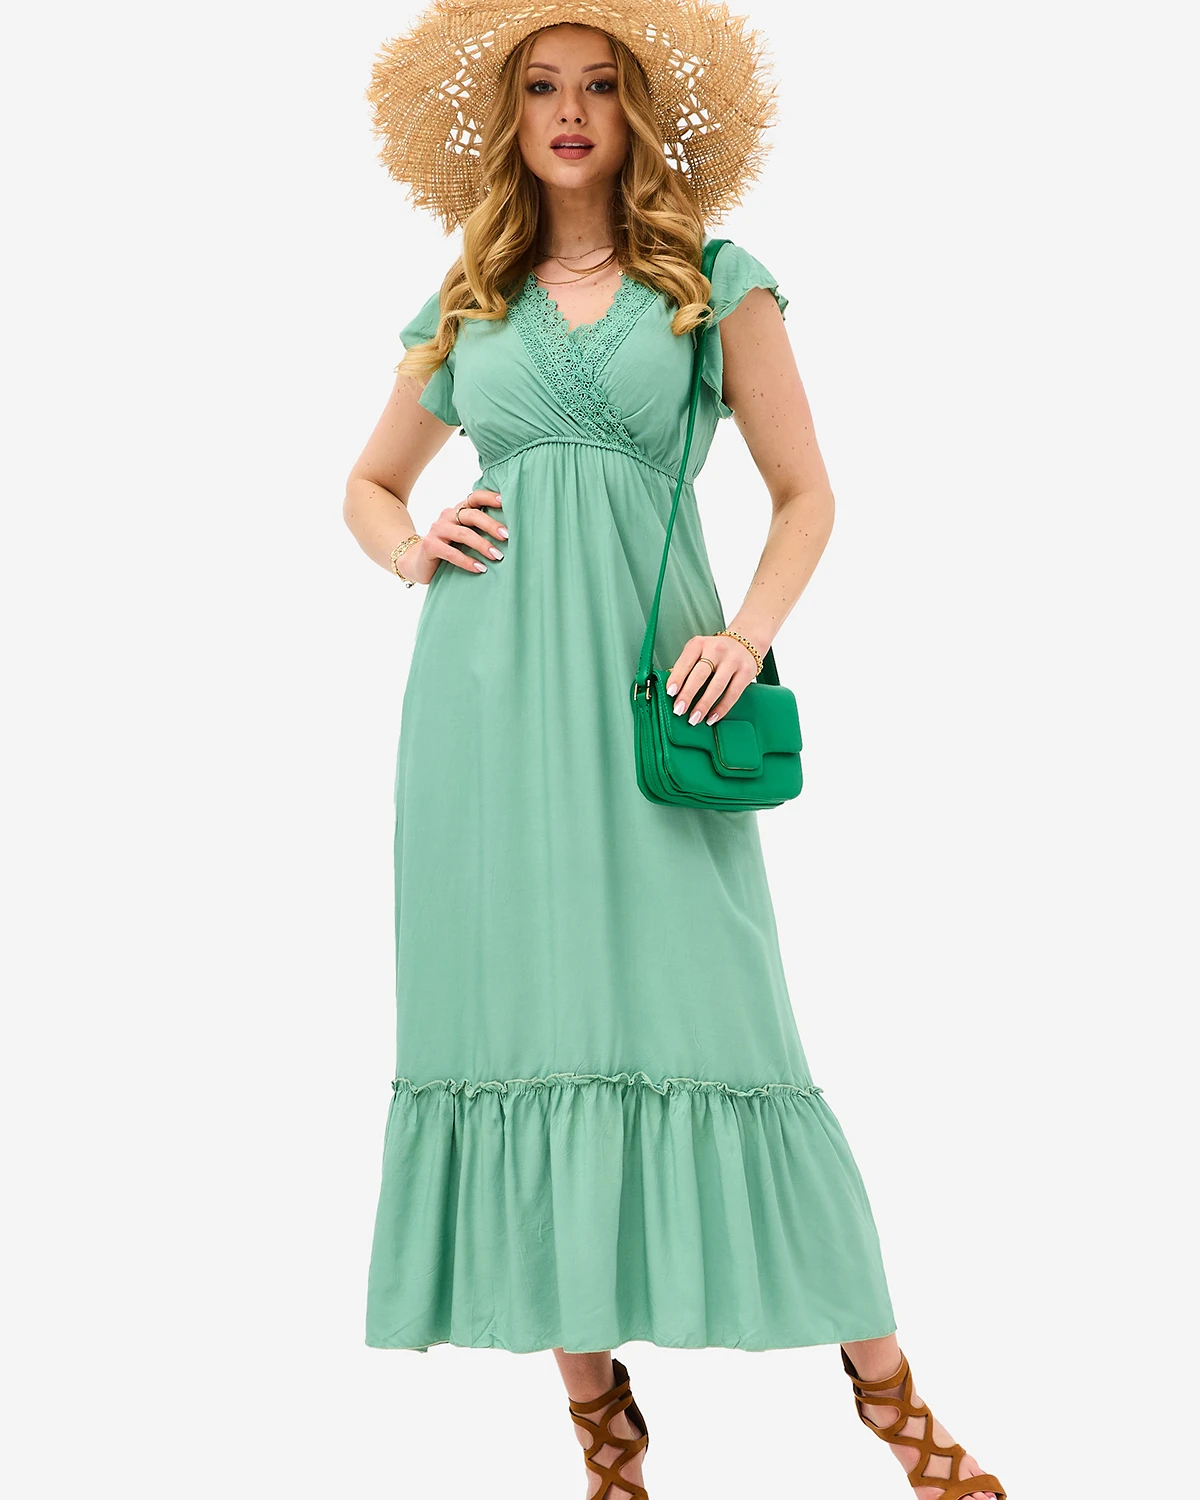 Dámske zelené dlhé šaty s čipkou - Oblečenie